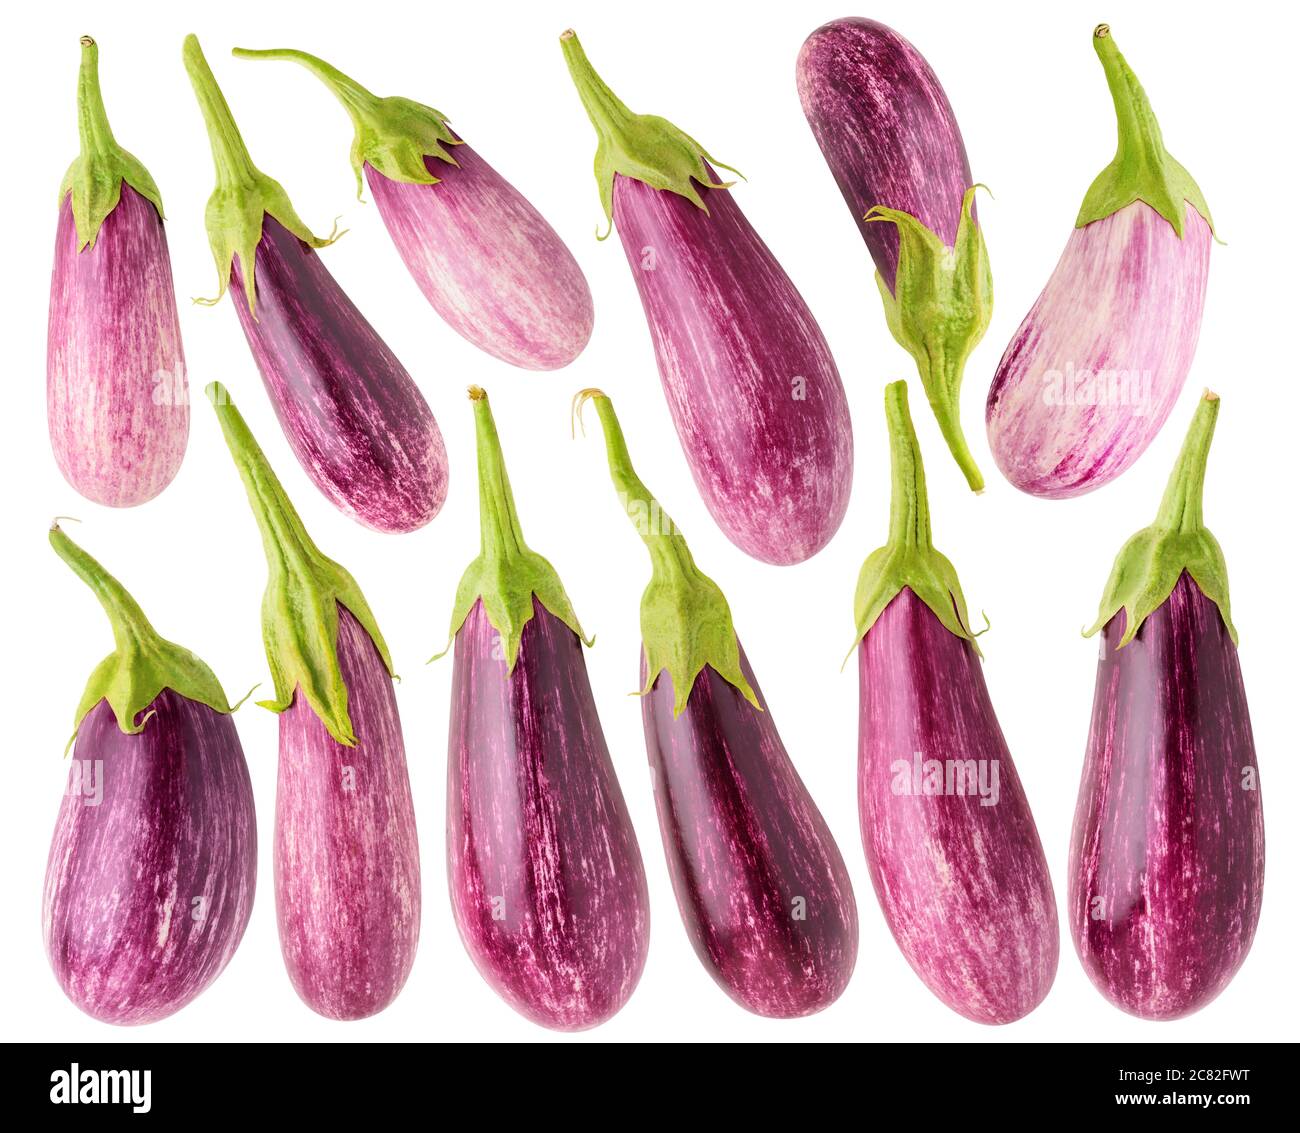 Isolierte Auberginen Sammlung. 12 ganze rohe Auberginen in verschiedenen Formen isoliert auf weißem Hintergrund Stockfoto